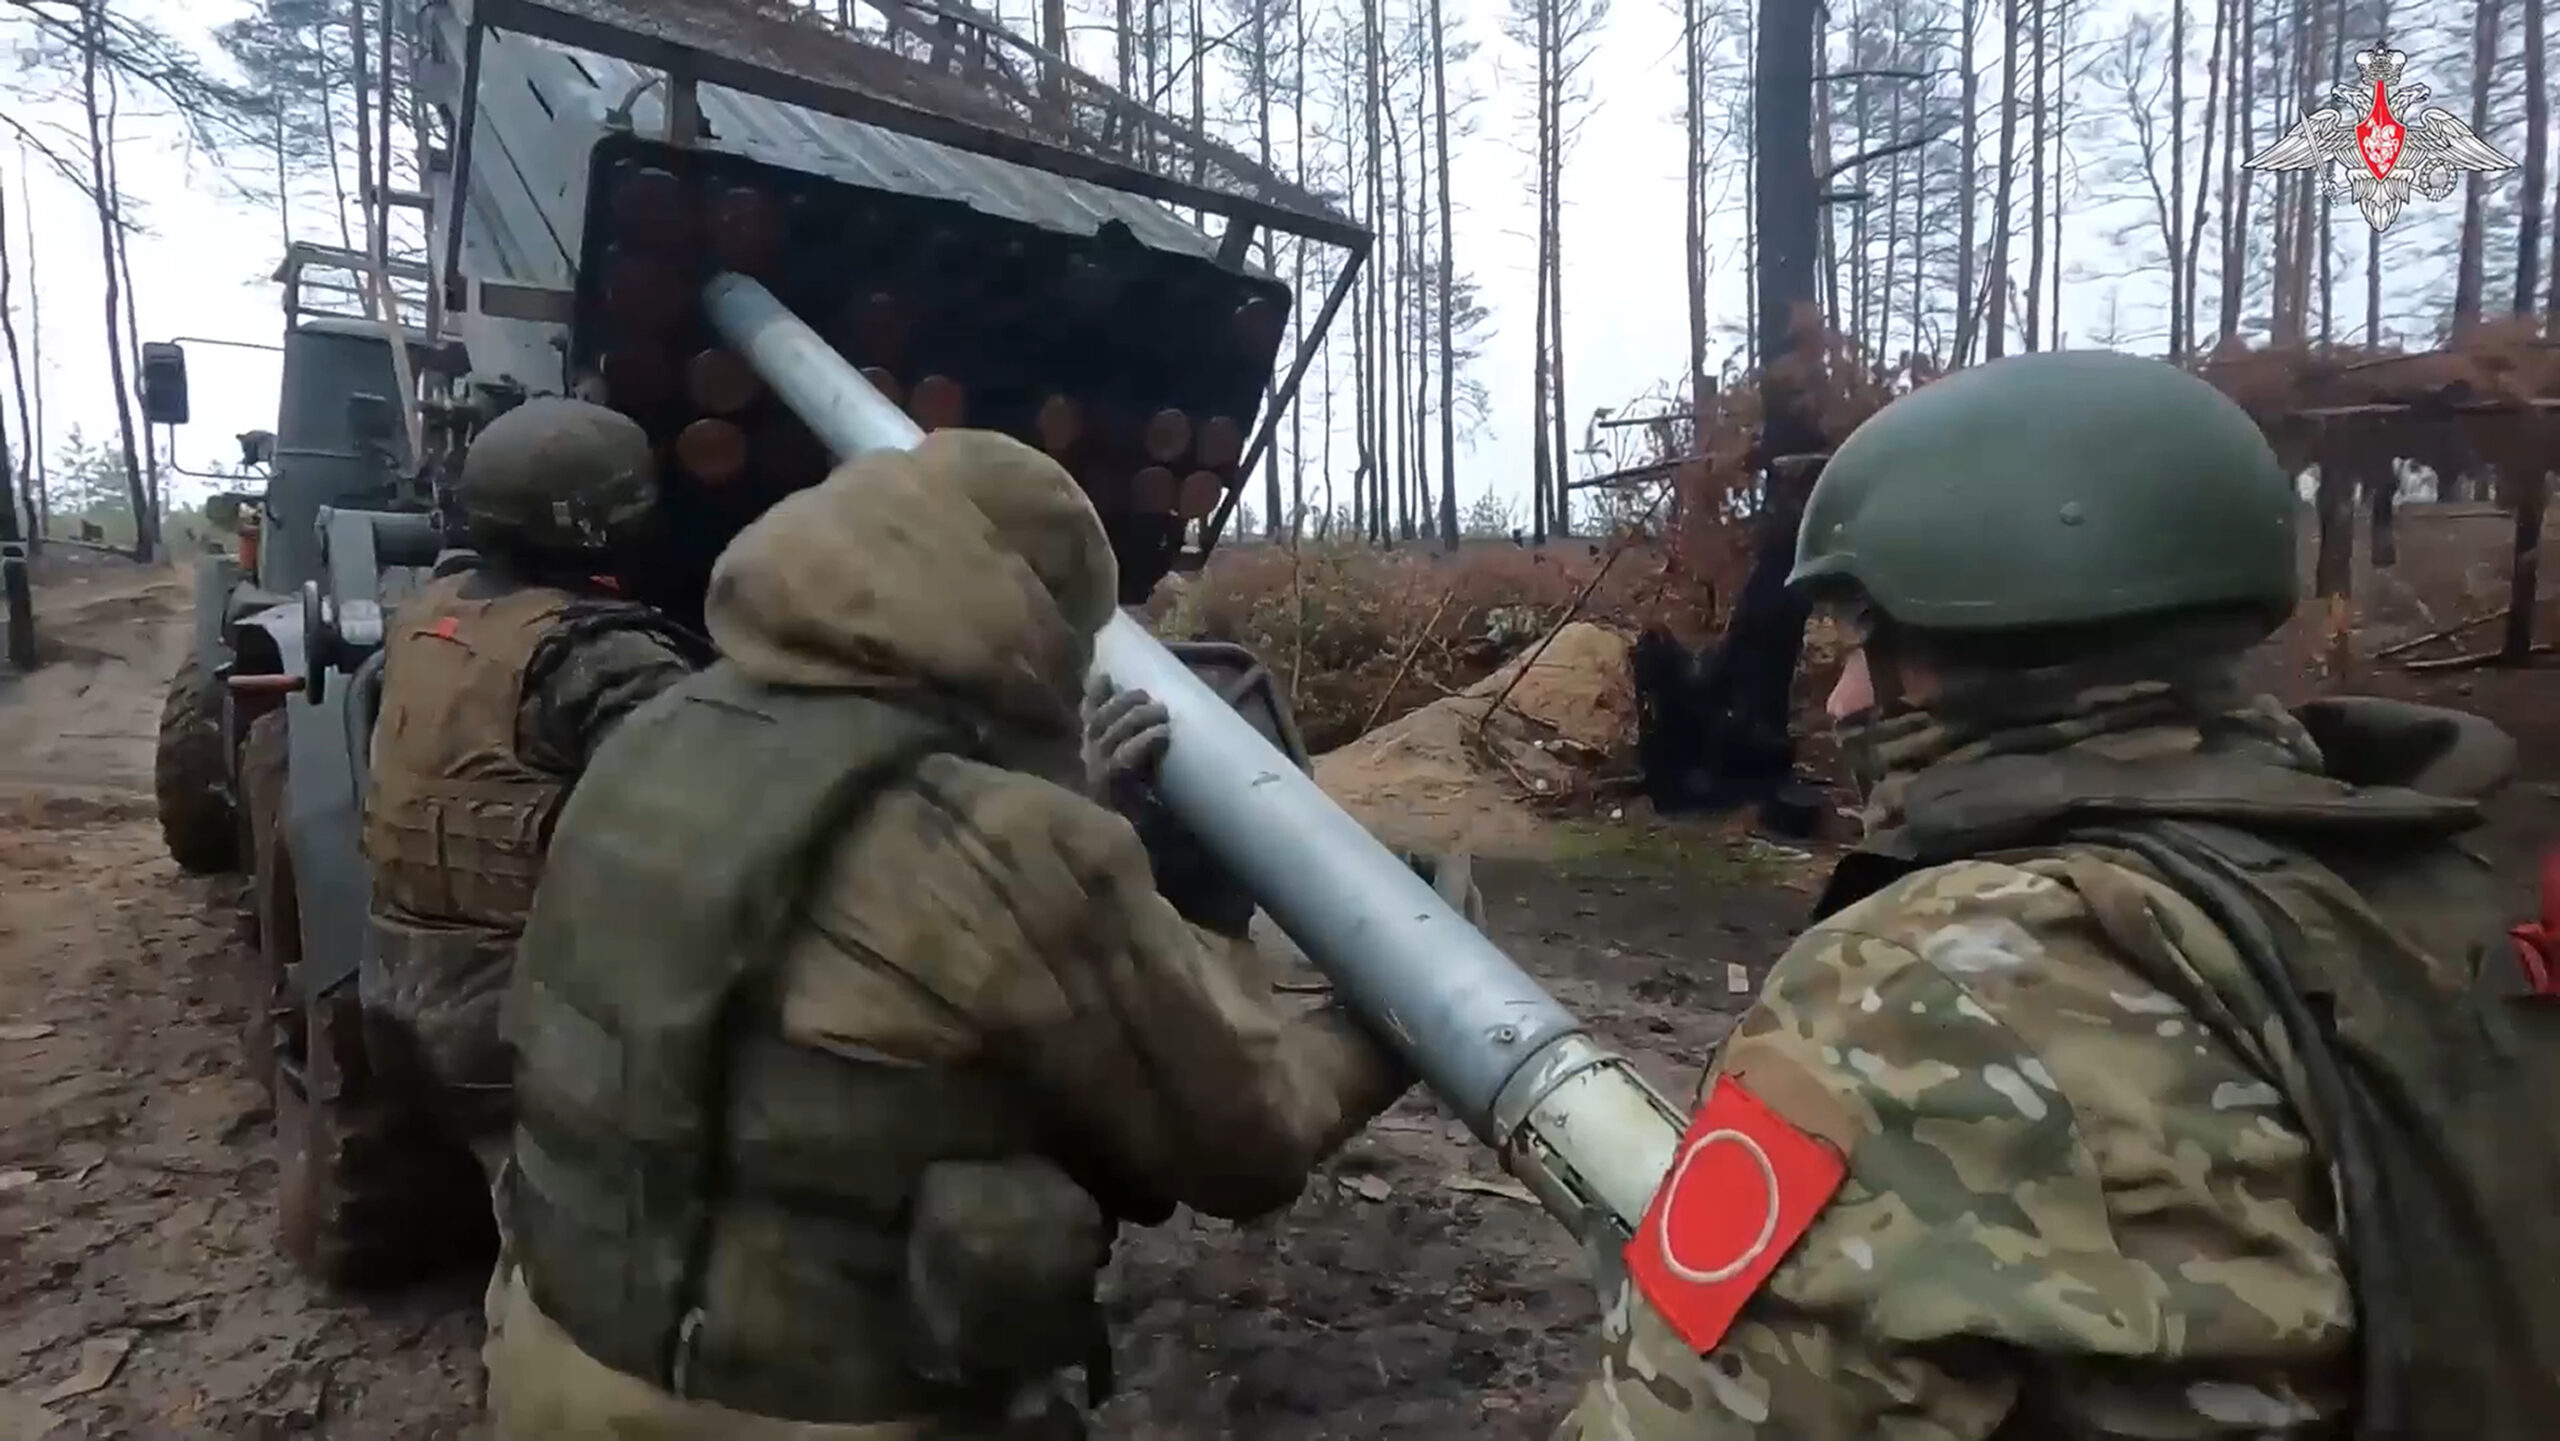 Ουκρανία: Οι ρωσικές δυνάμεις «βελτίωσαν τις θέσεις τους» στο μέτωπο – Ουκρανοί στρατιώτες πιάστηκαν αιχμάλωτοι στην Αβντιίβκα